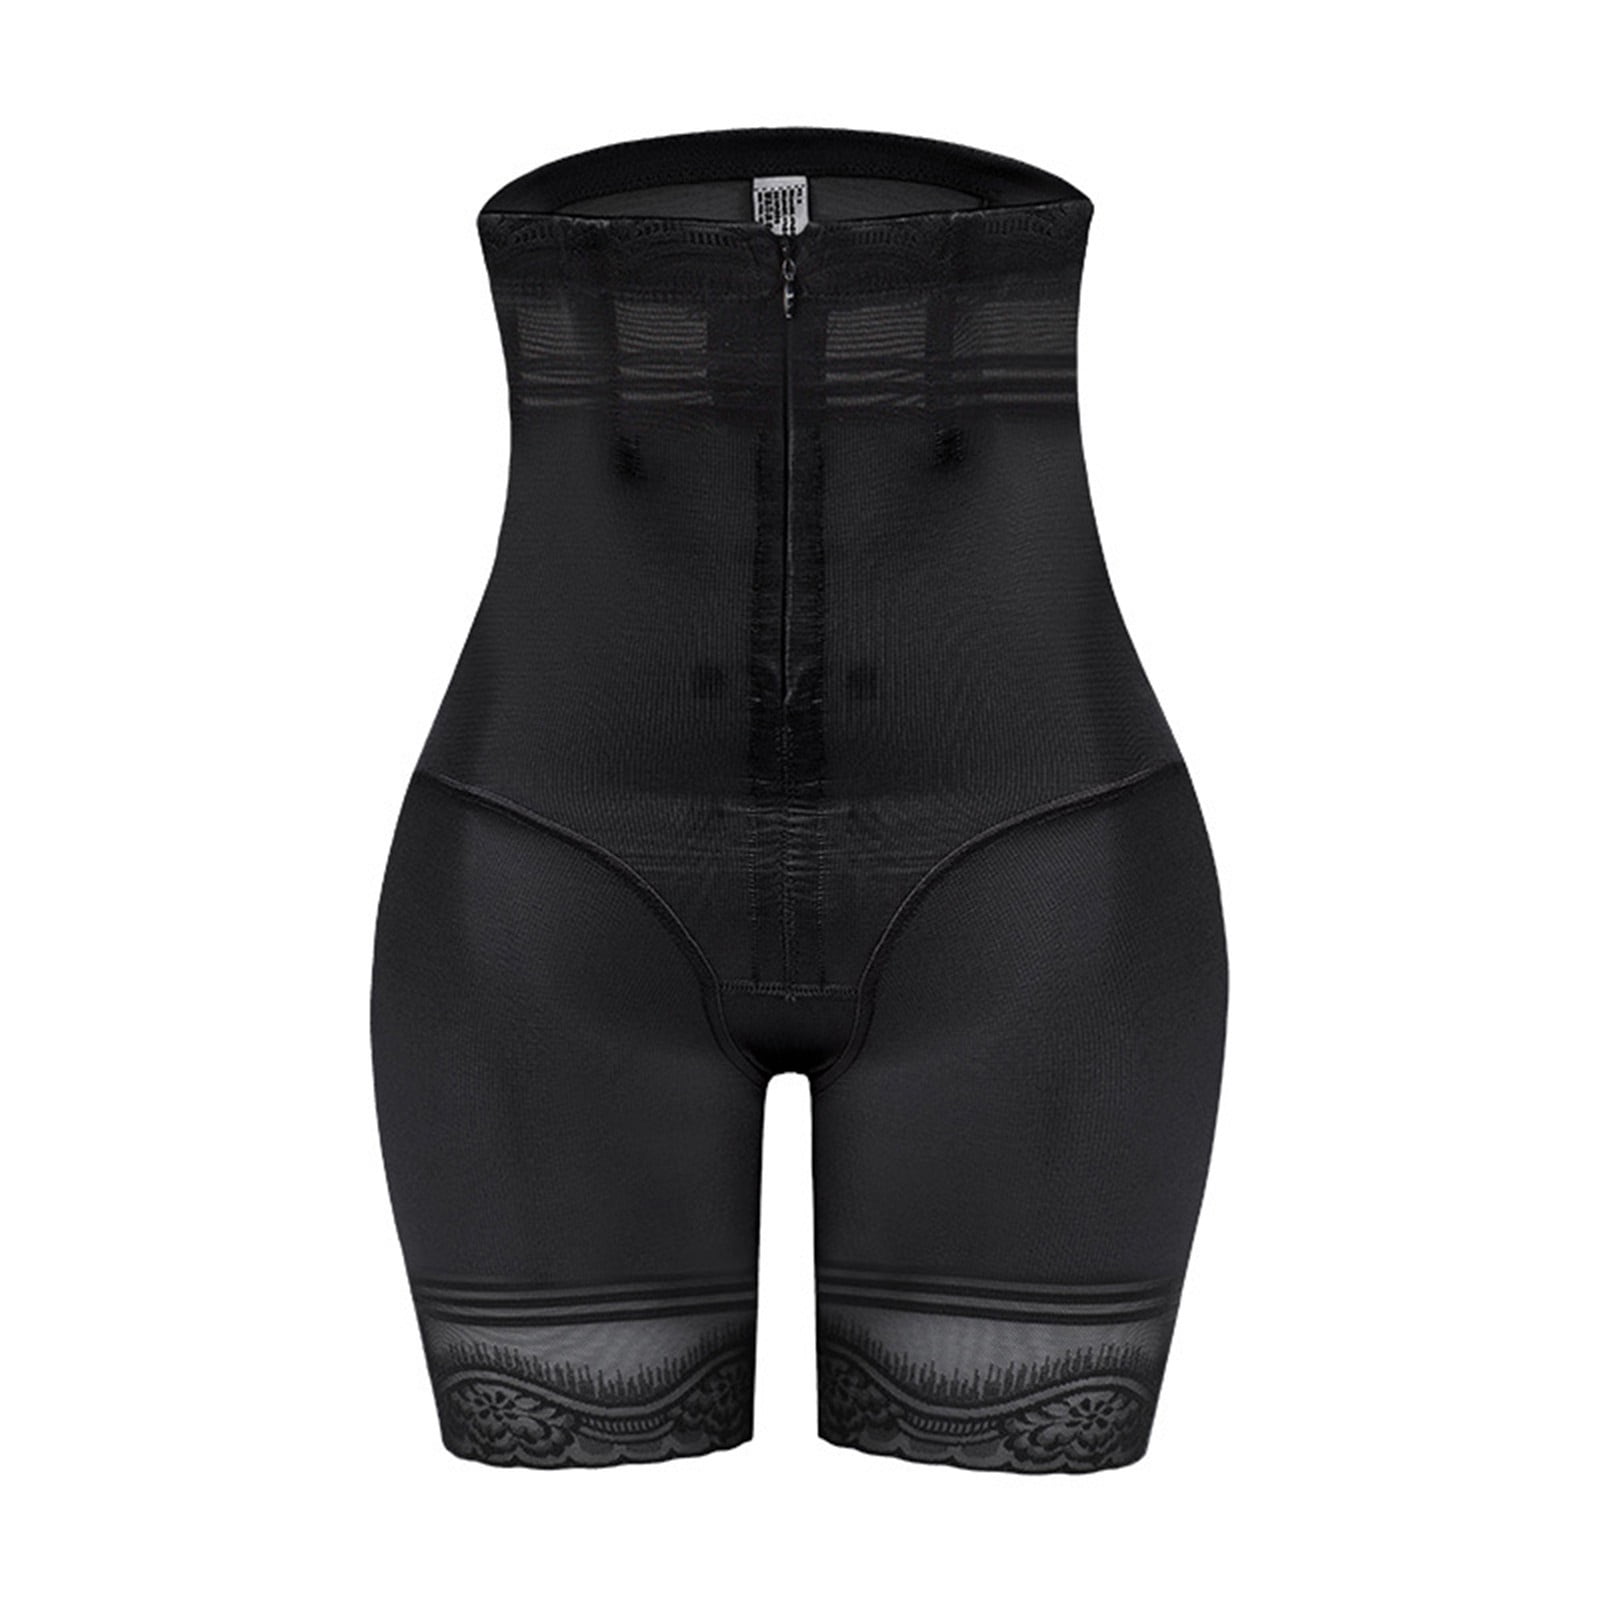 InstantFigure Women’s Compression Shaping Underbust Zip Bodysuit